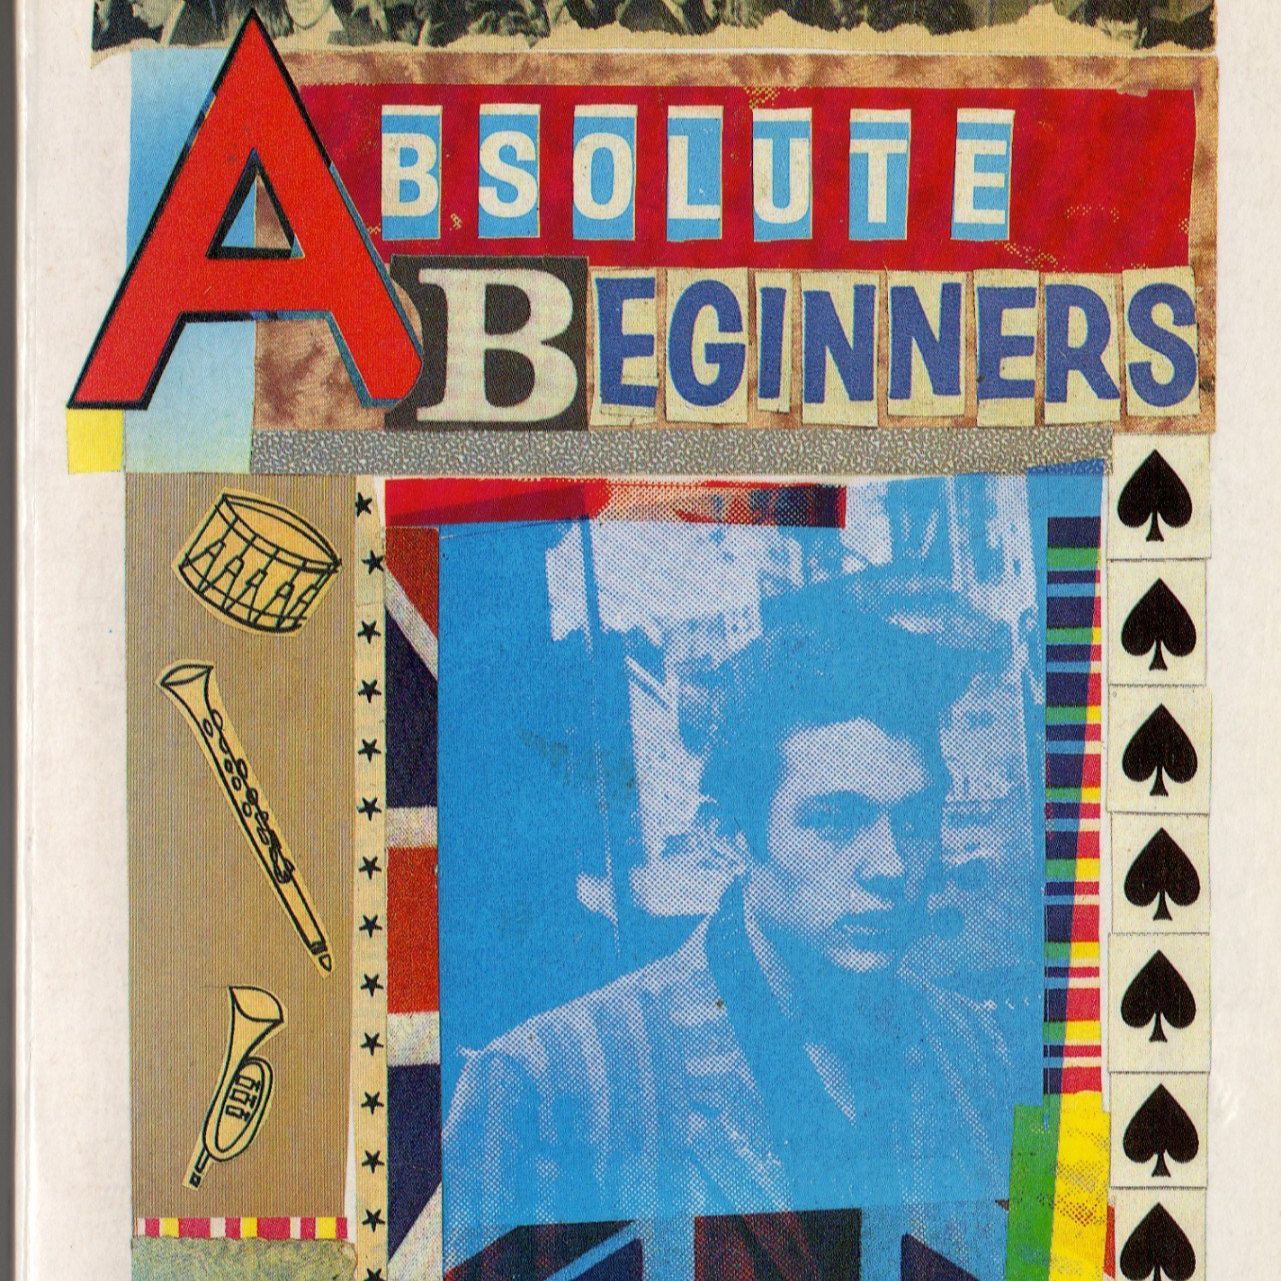 Absolute Beginners - Colin MacInnes